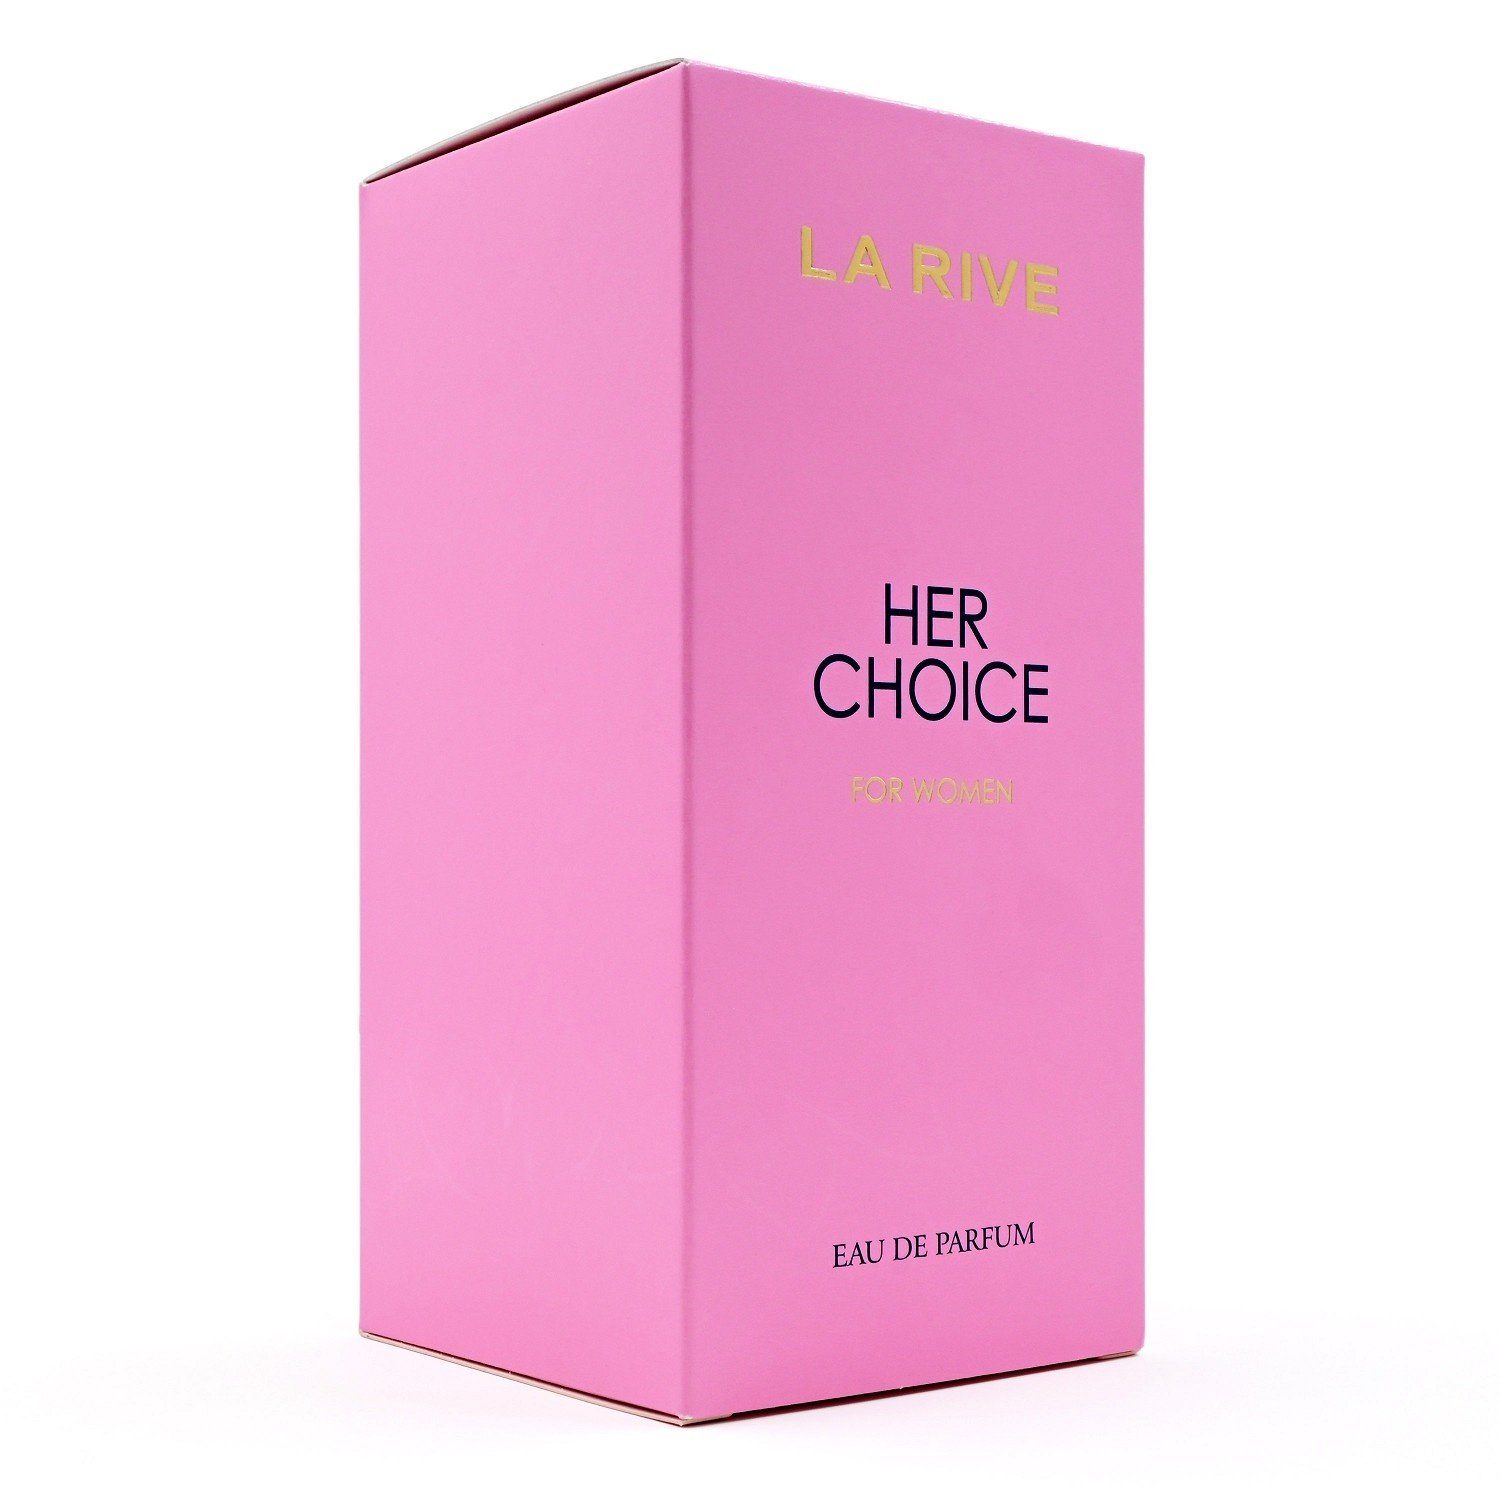 Choice Parfum - RIVE Eau Eau Parfum ml, de Rive de Her ml 100 100 LA - La